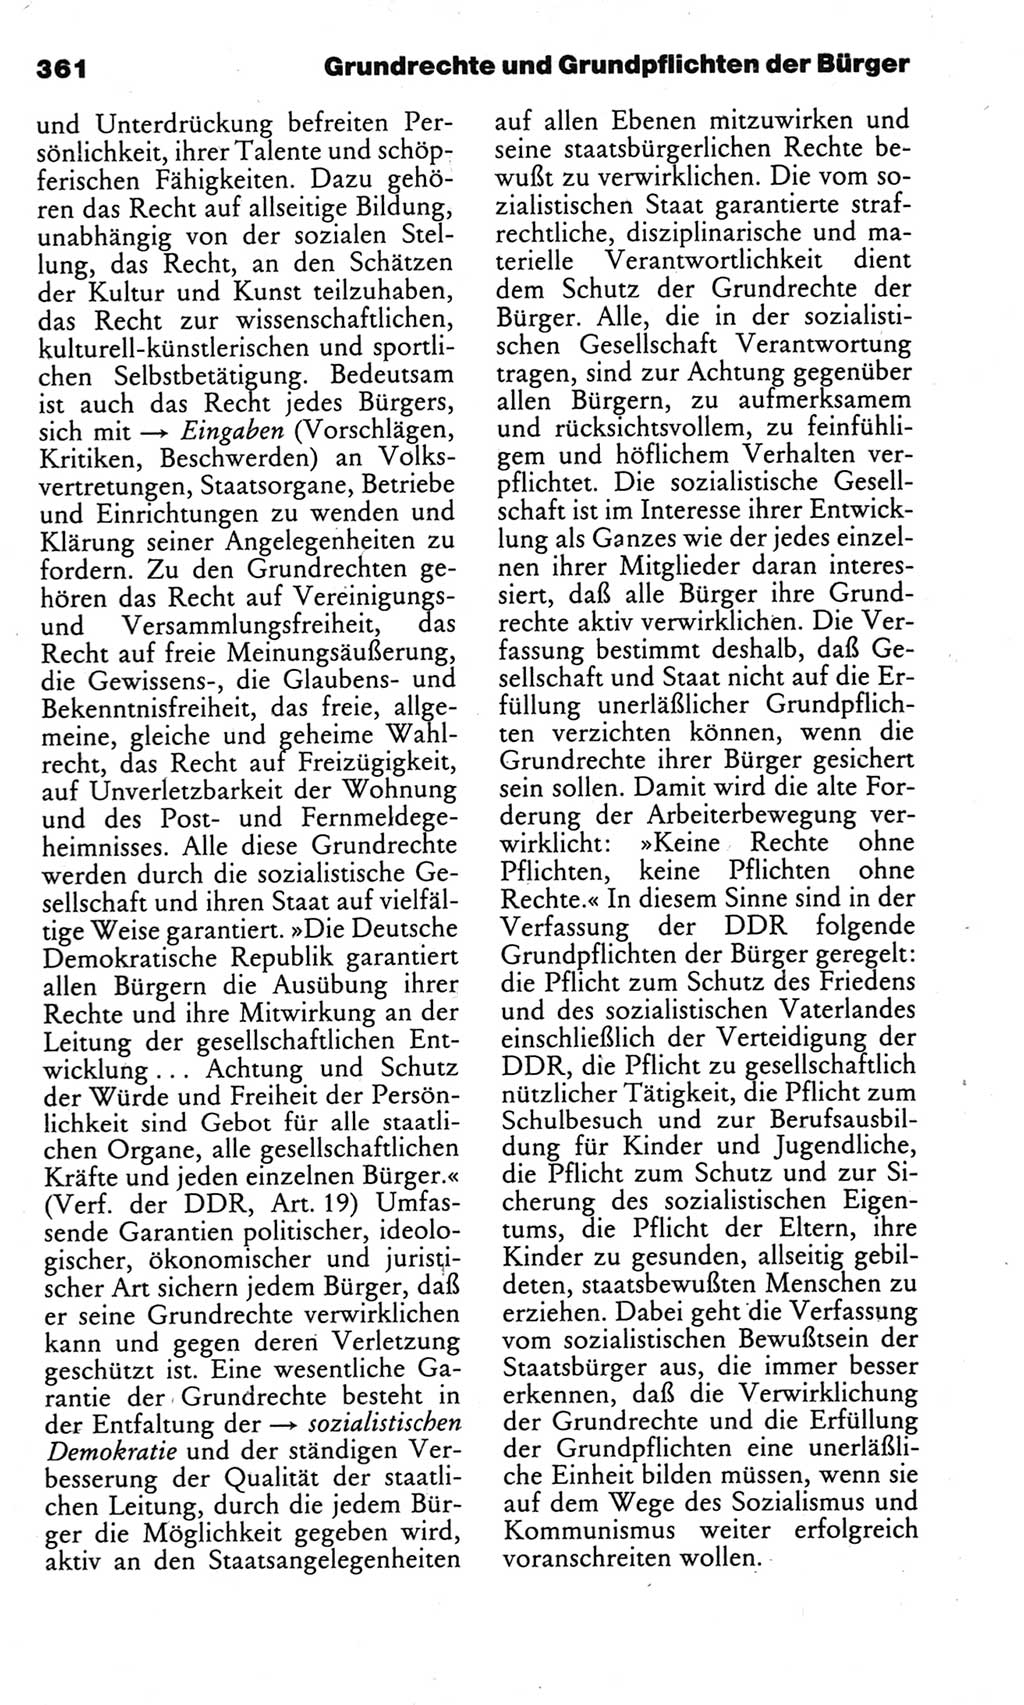 Kleines politisches Wörterbuch [Deutsche Demokratische Republik (DDR)] 1983, Seite 361 (Kl. pol. Wb. DDR 1983, S. 361)